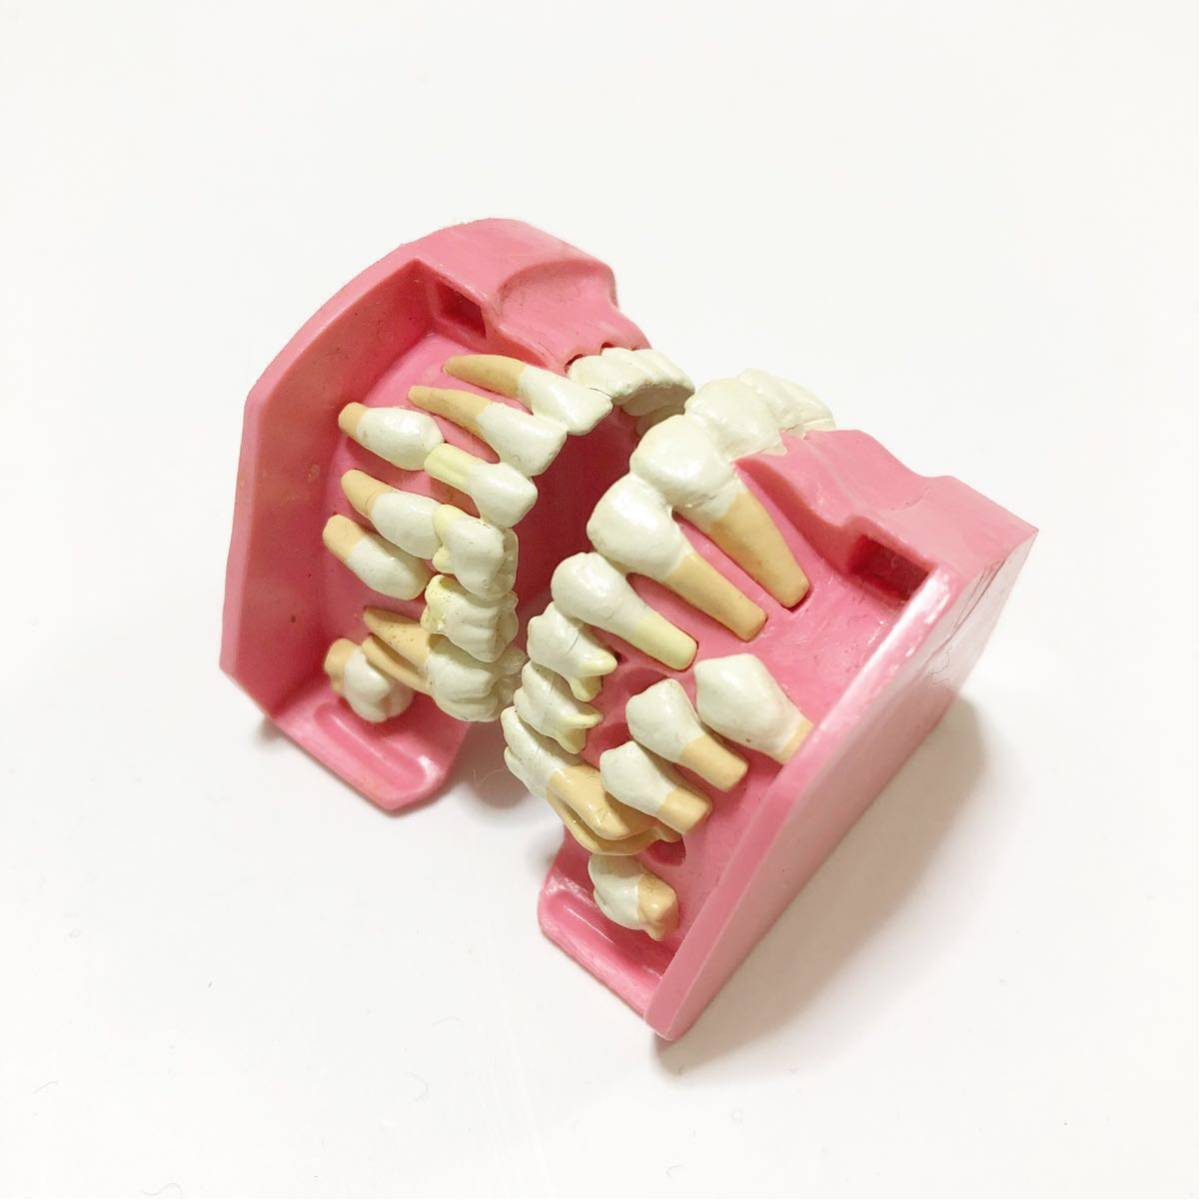 中古通販サイトです 入れ歯のフィギア Artificial Tooth ガチャポン オモチャ Character Figure 上下の歯 プレミアムアウトレット店 Prodomodesign Com Br